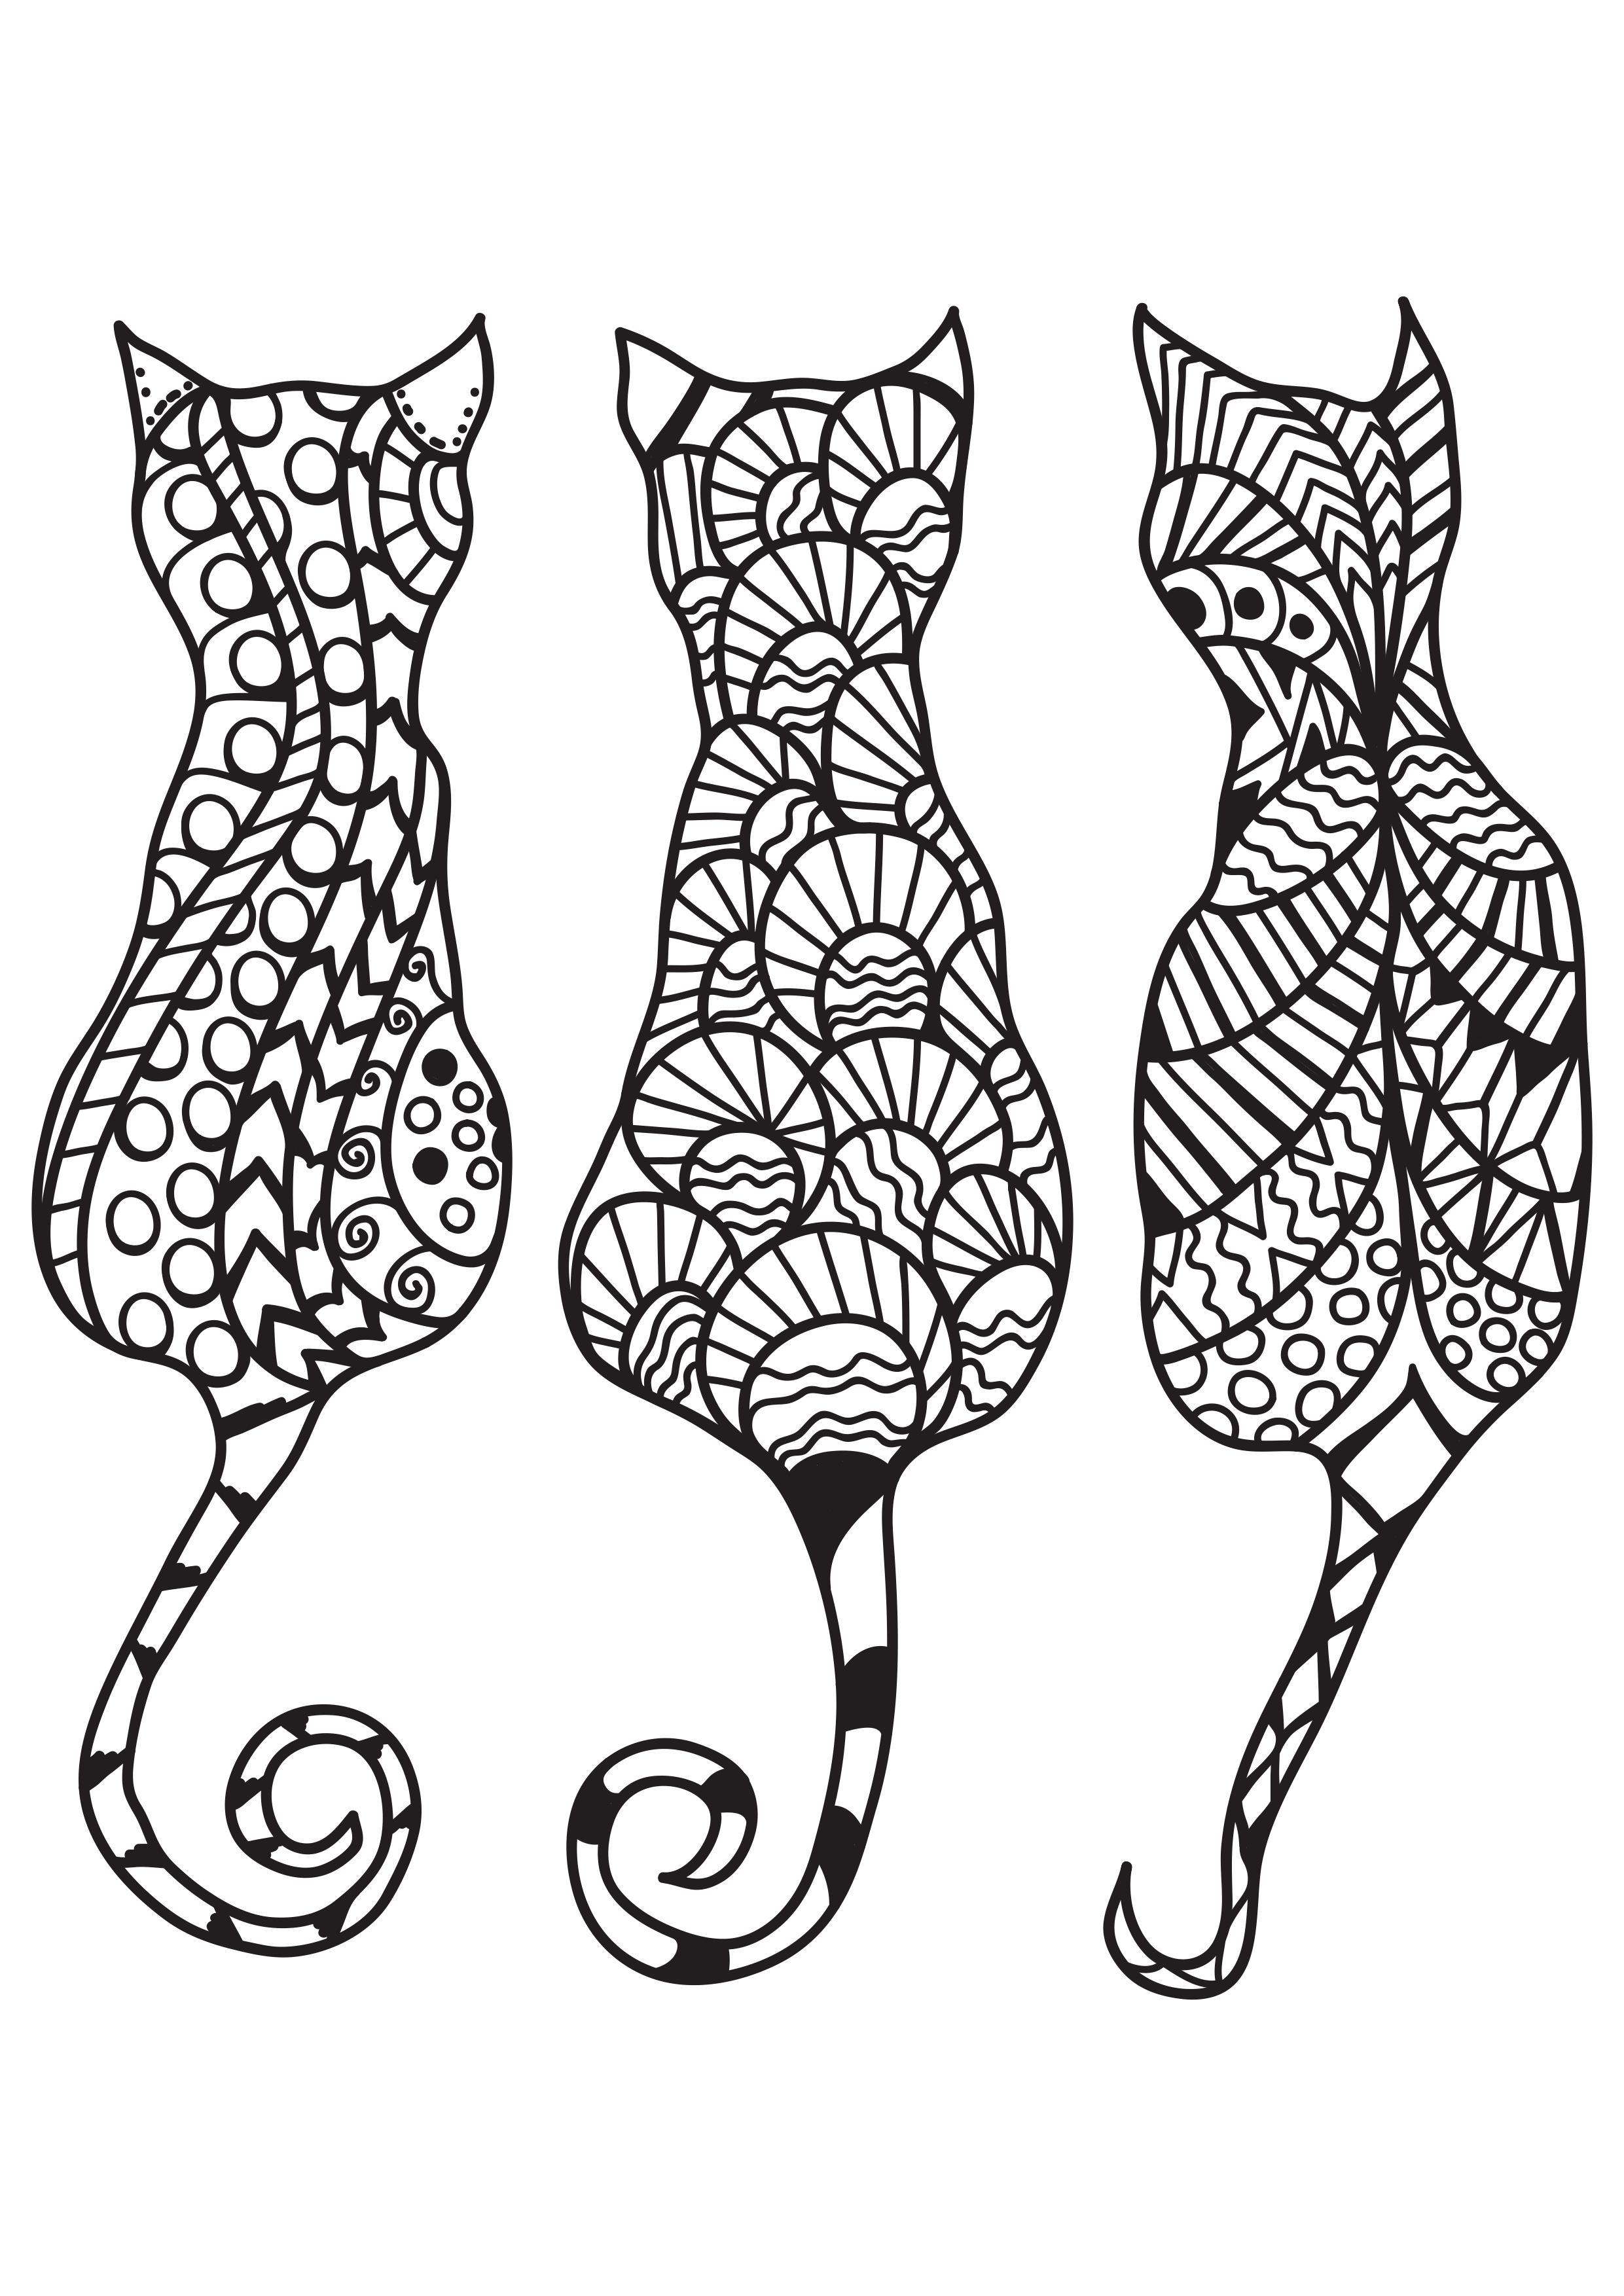 Dibujo para colorear 3 gatos